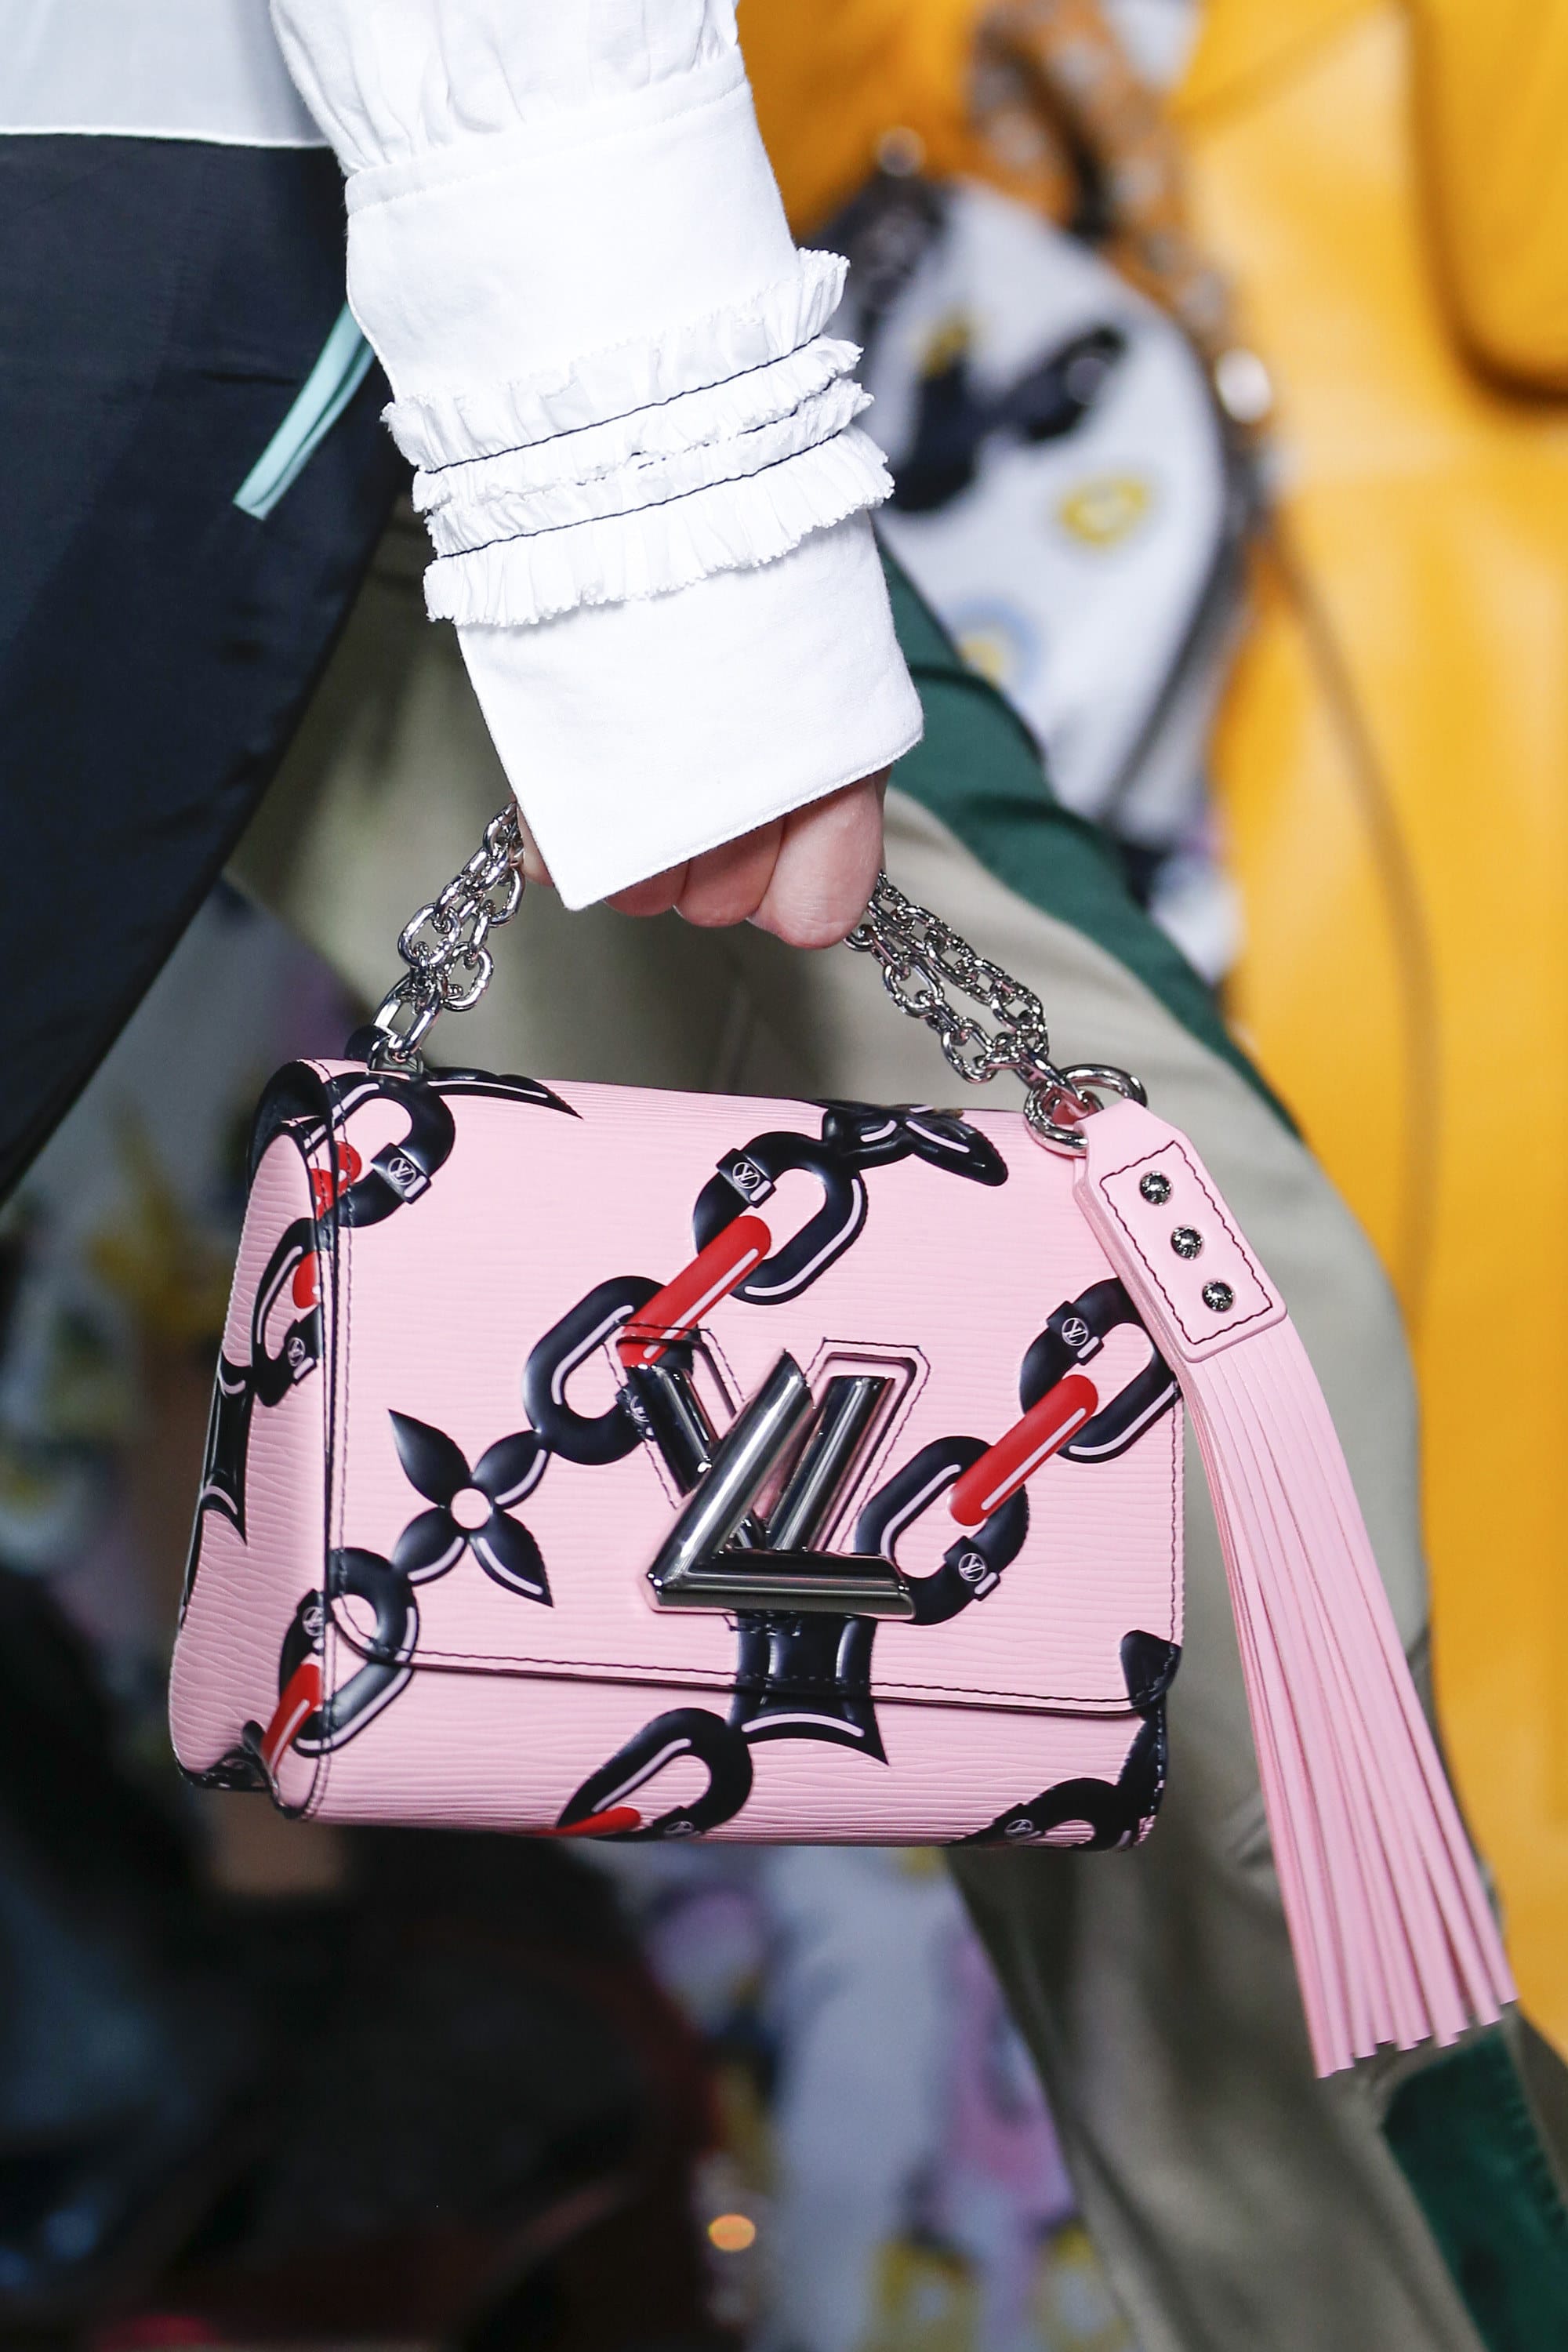 Louis Vuitton Reintroduces the GO-14 Bag